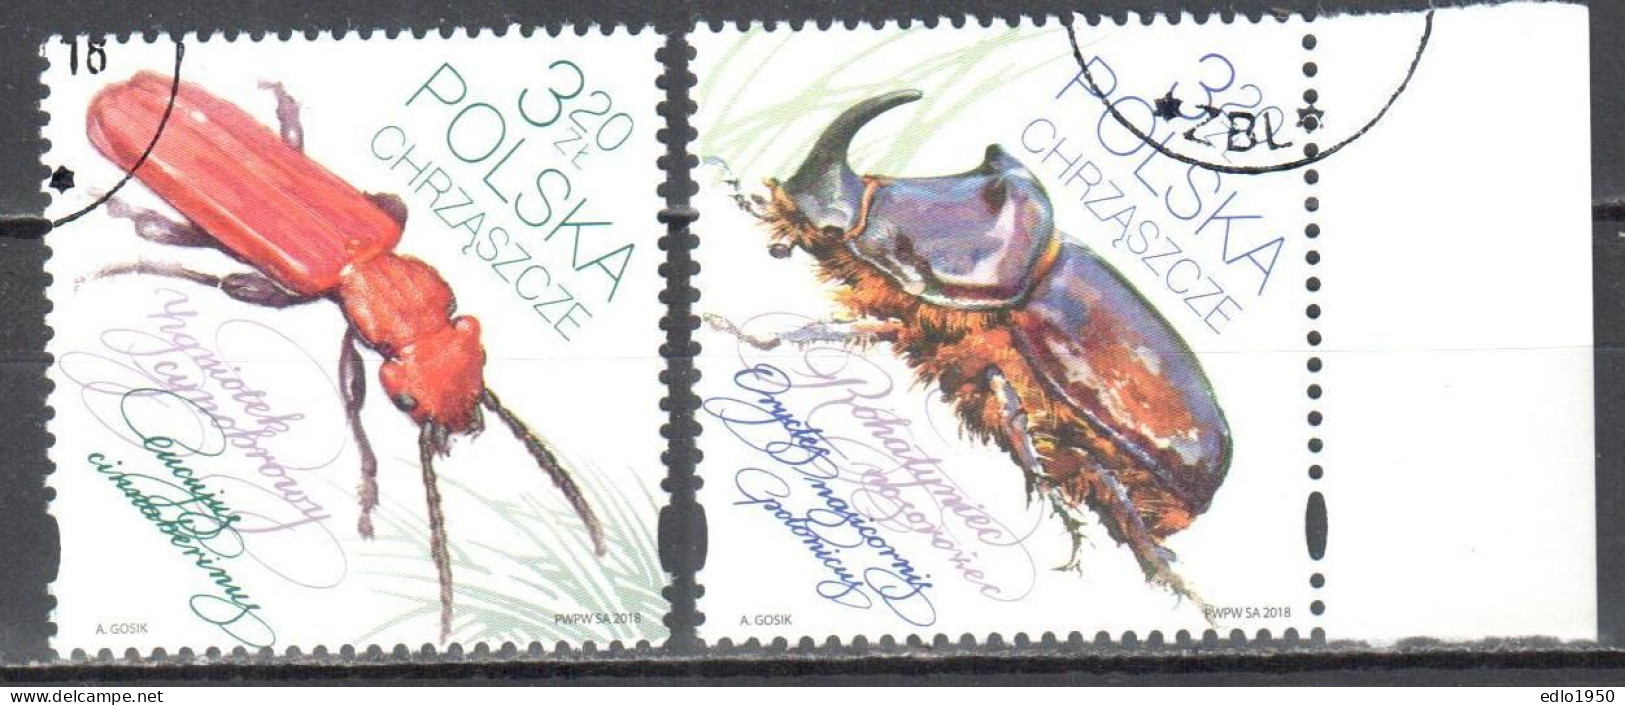 Poland 2018 - Beetles - Mi.5019-20 - Used - Gebraucht